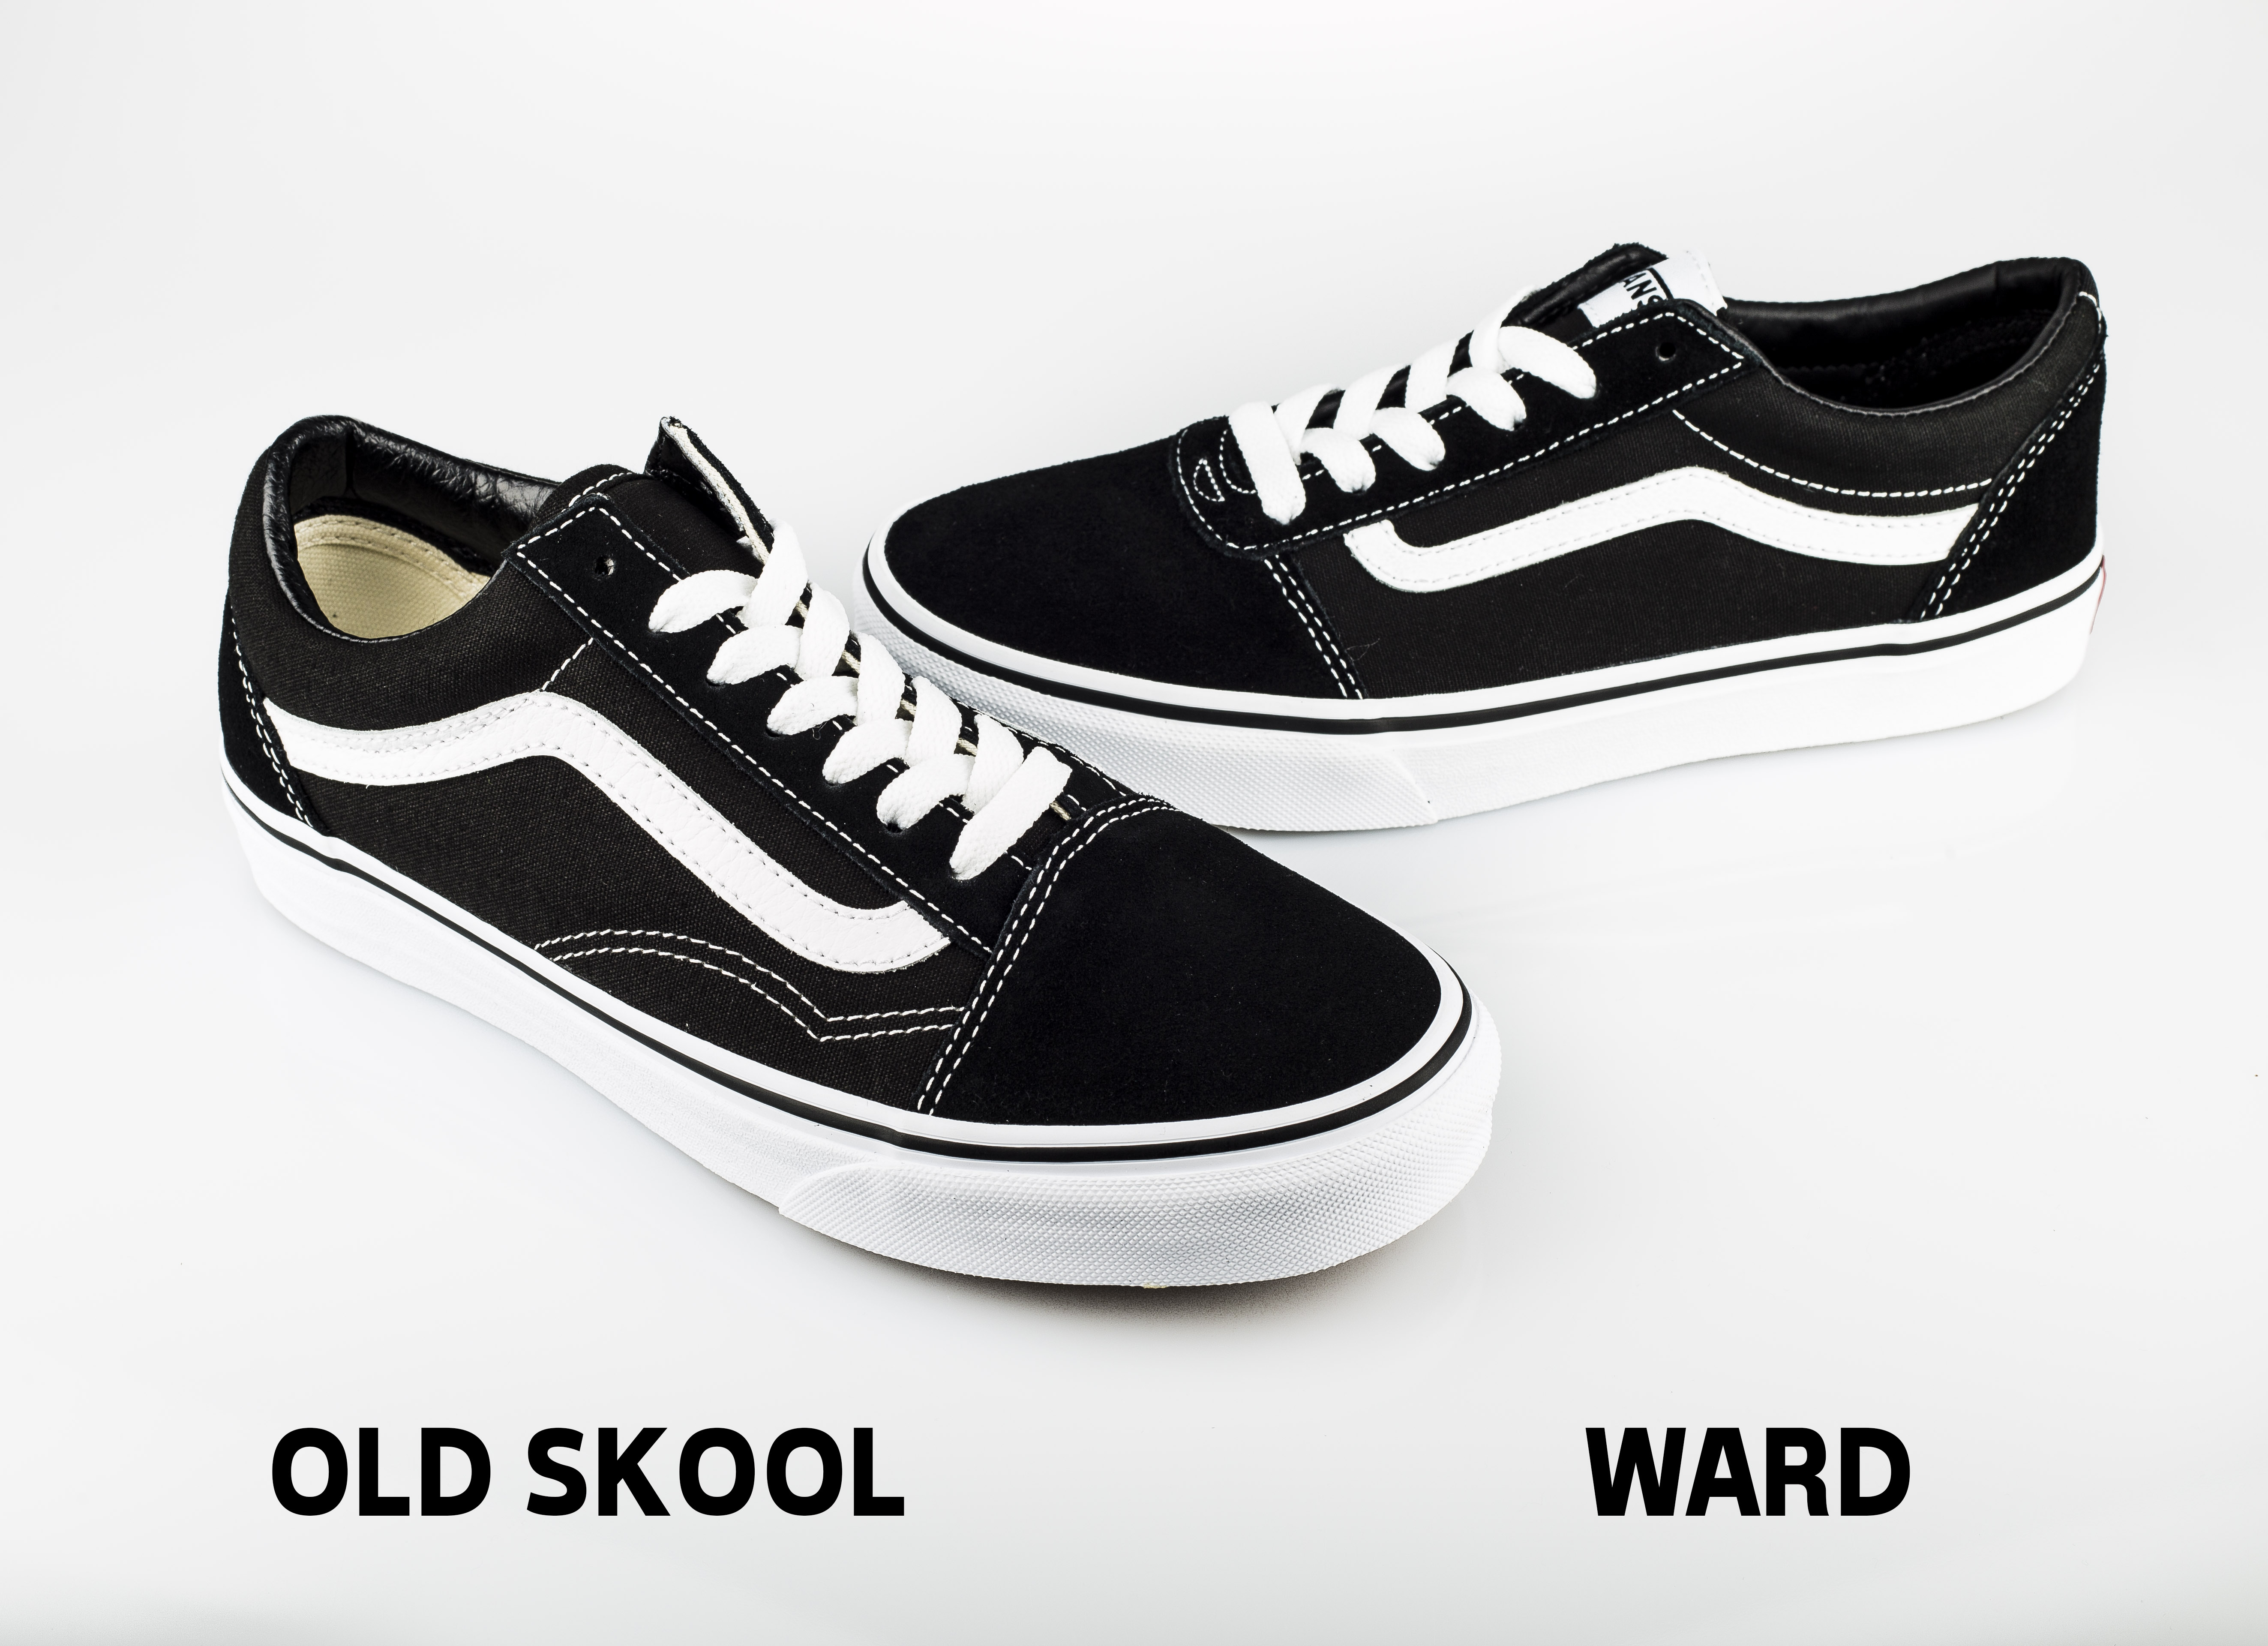 vans ward low vs old skool